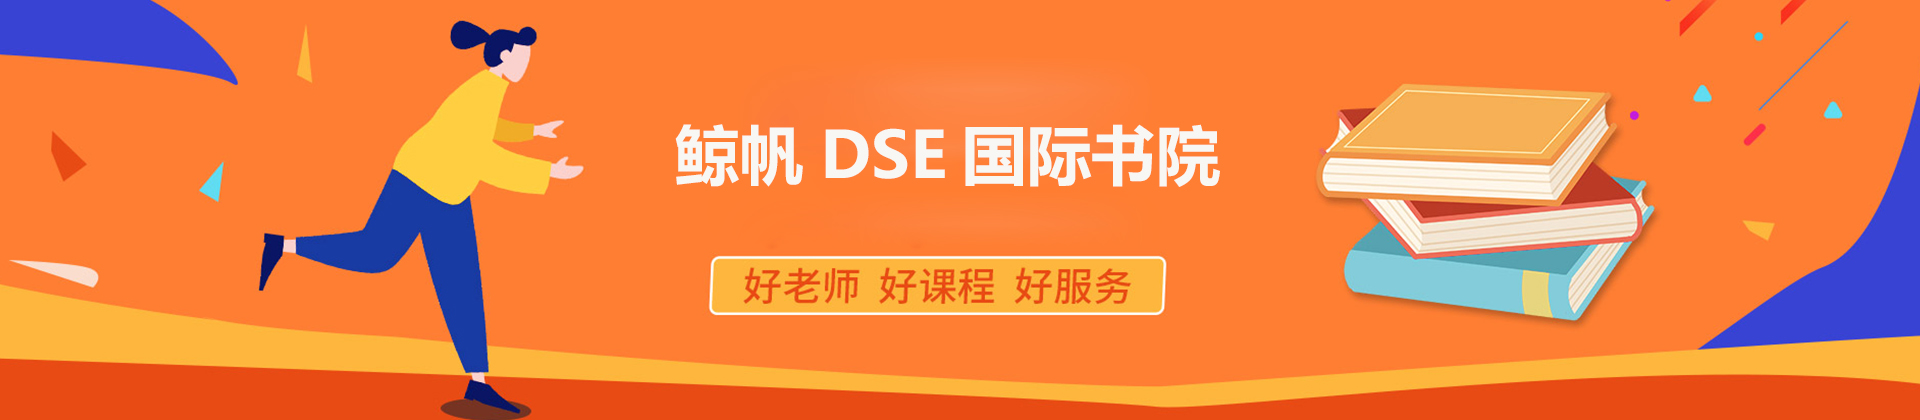 深圳鲸帆DSE国际书院